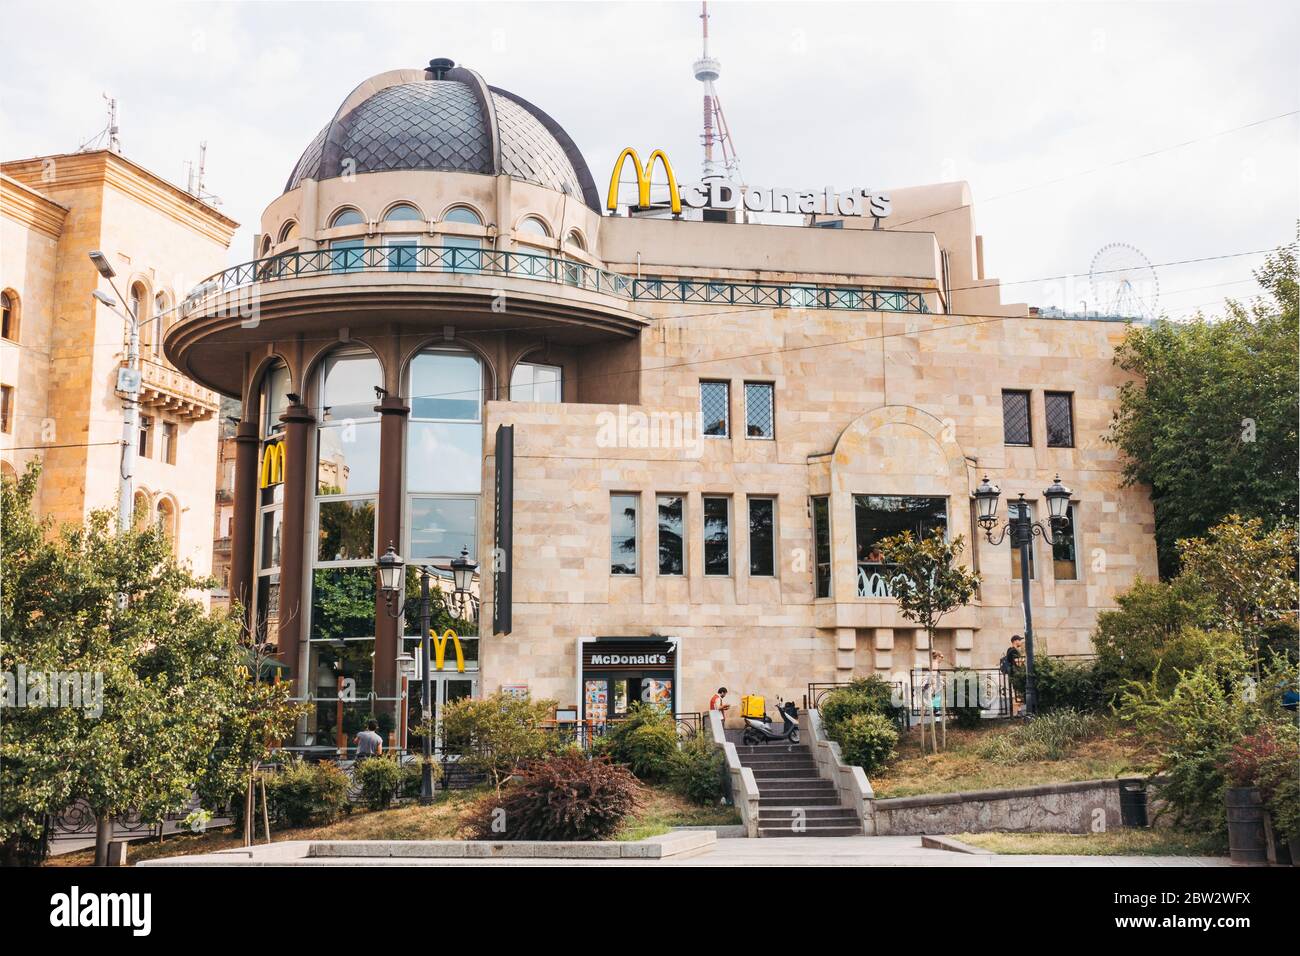 Un ristorante McDonald's in un edificio storico su Rustaveli Ave a Tbilisi, Georgia Foto Stock